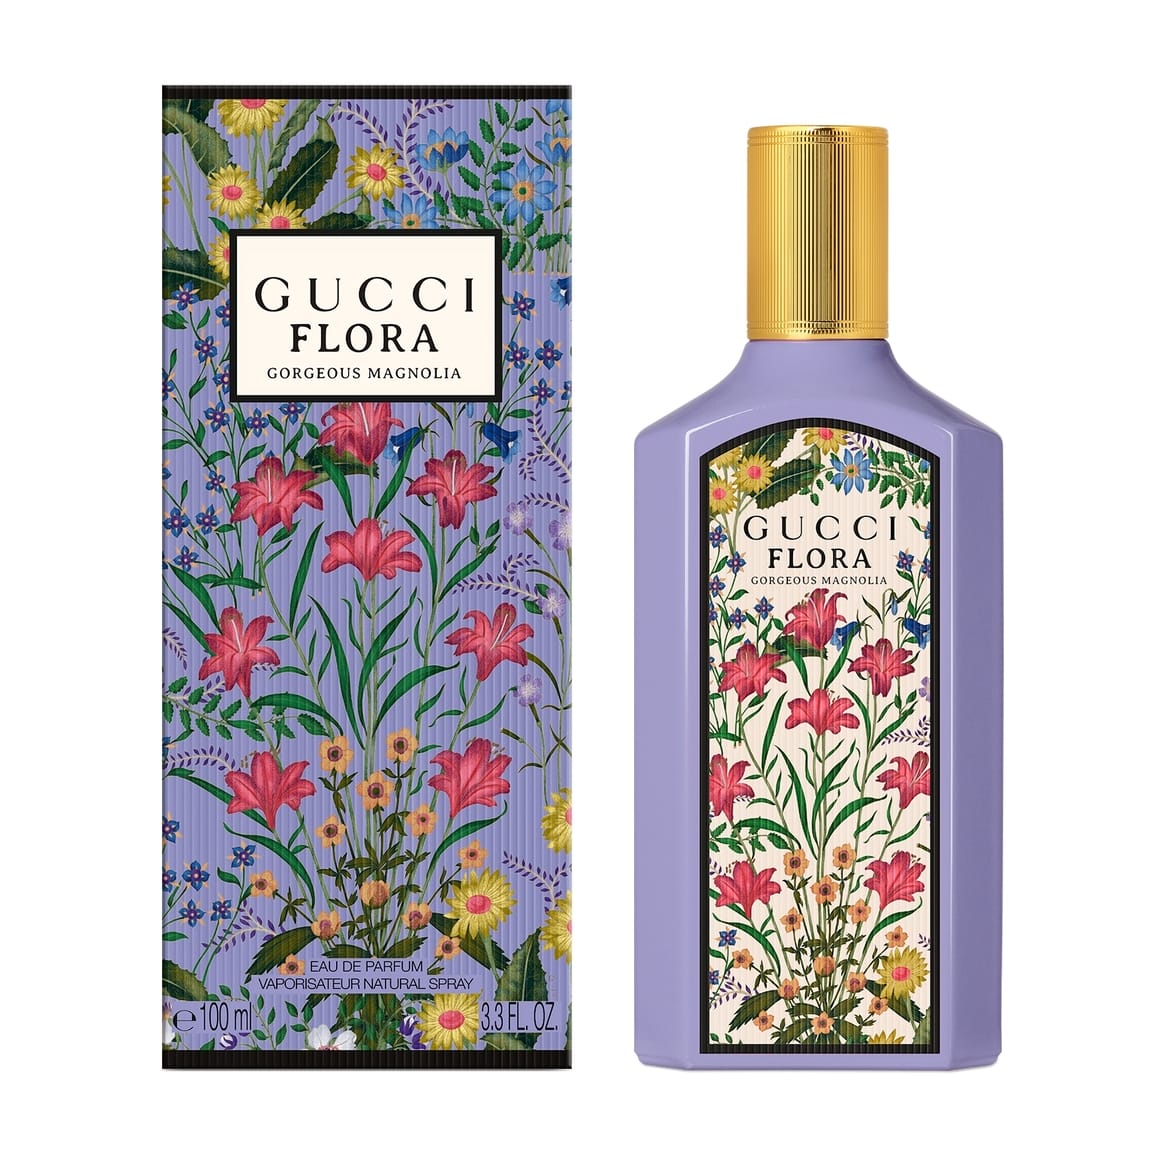 Gucci Flora Magnolia 